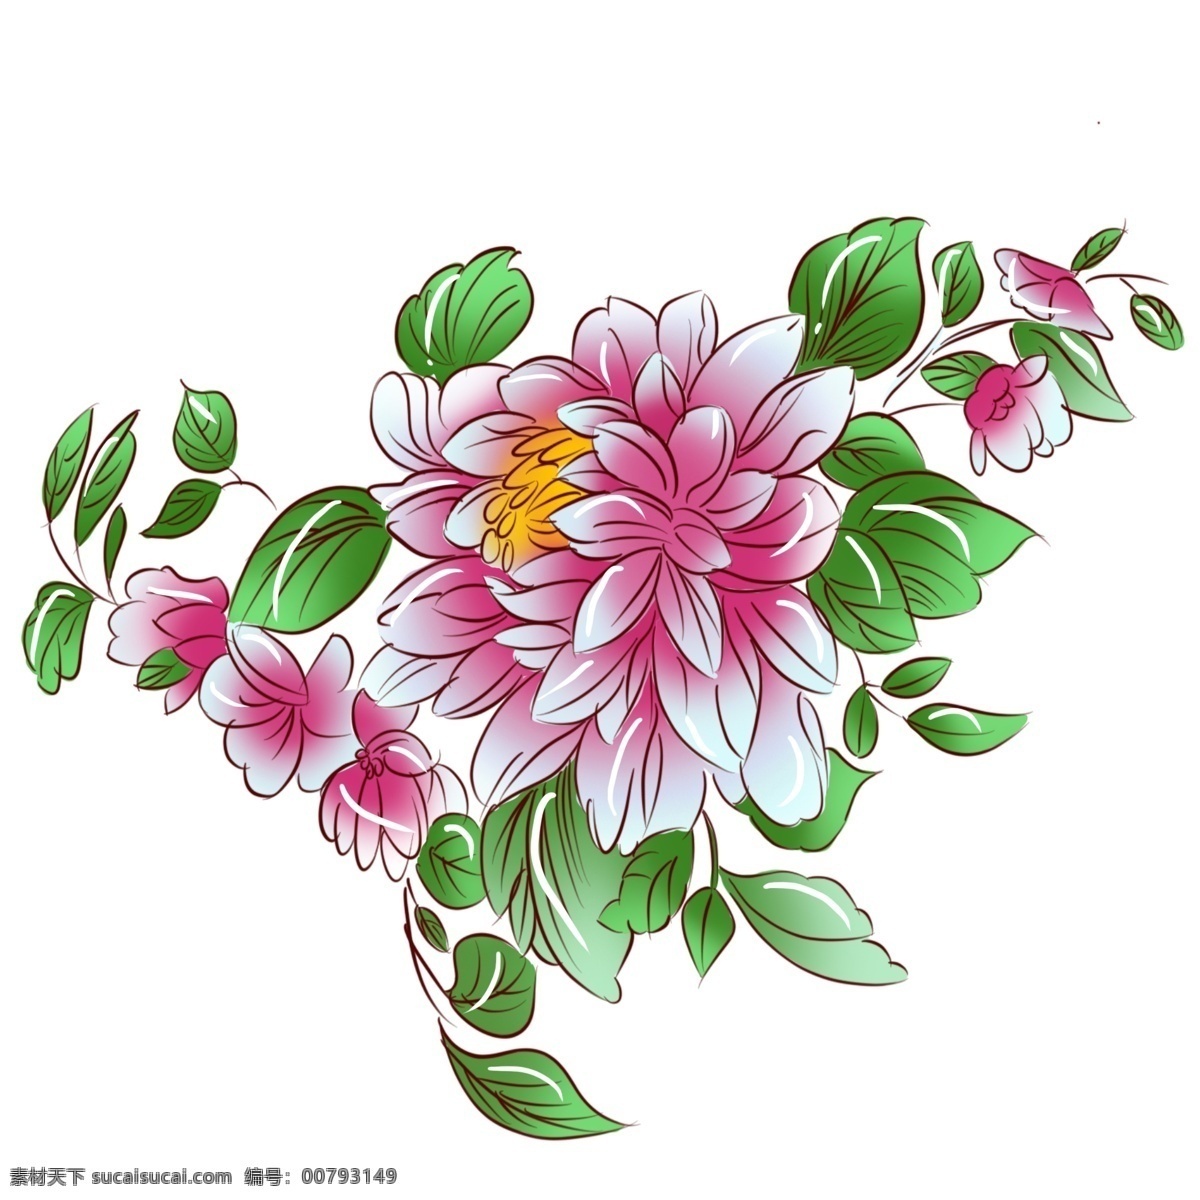 手绘 植物 粉红色 牡丹花 手绘花 手绘植物 手绘牡丹 粉红牡丹